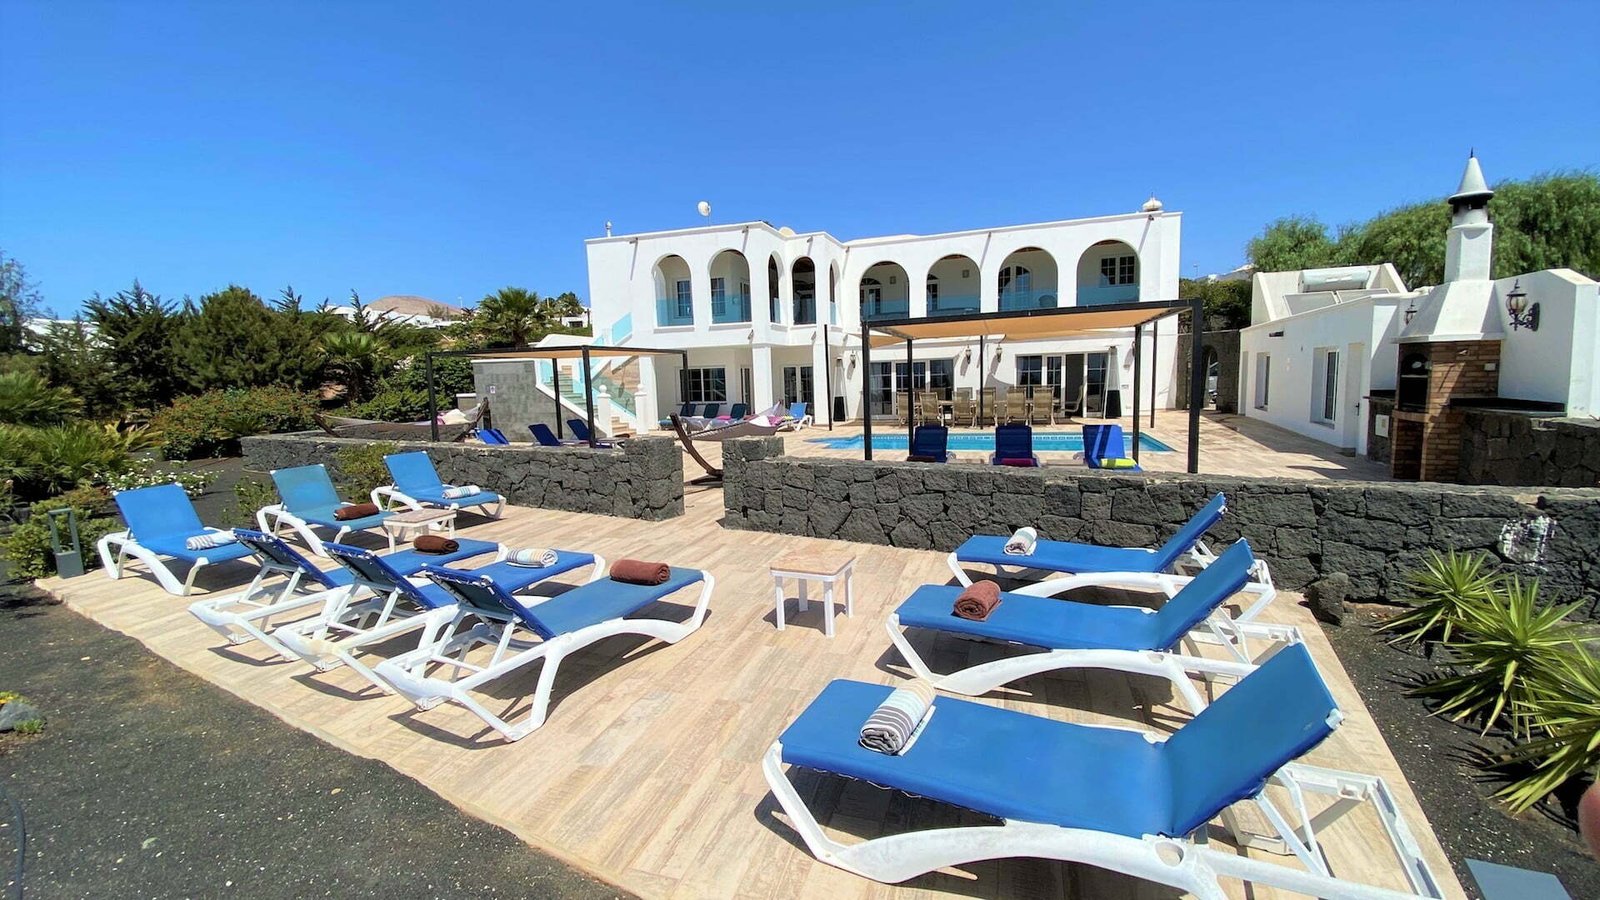 Villa Palacete - Sleeps 20 - 9 Bedroom Villa - Guime - Lanzarote - Front Terrace